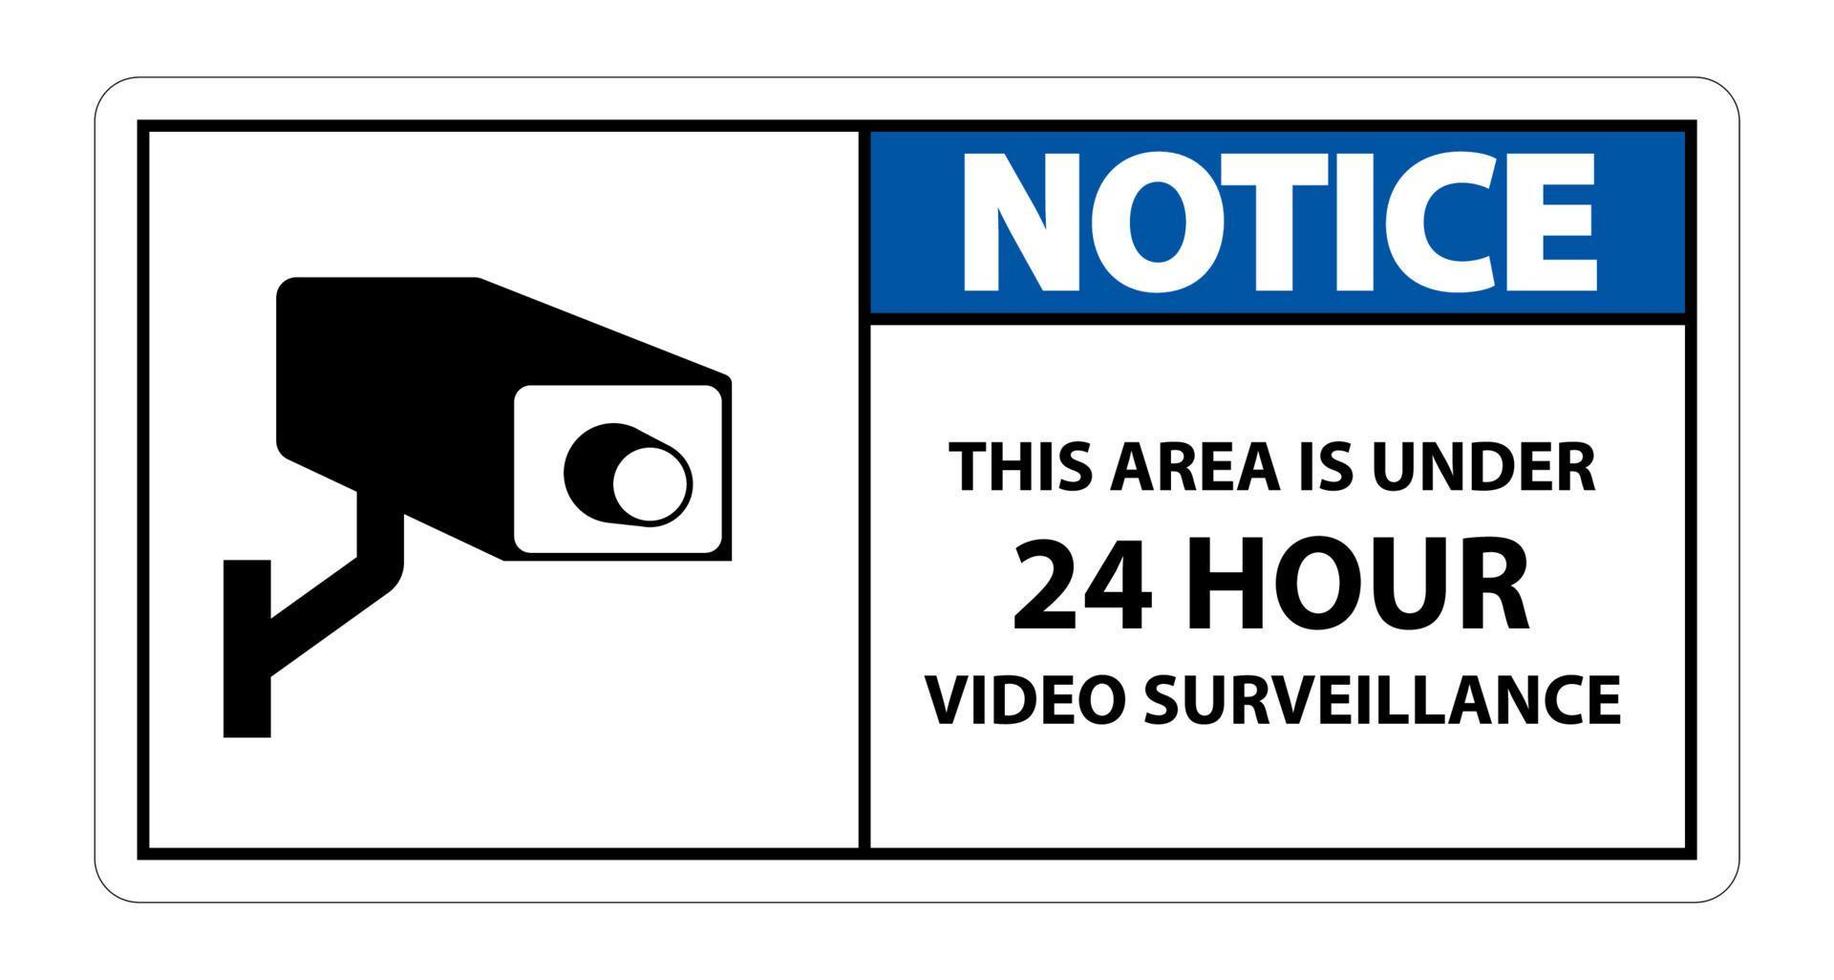 Thông báo khu vực có giám sát video 24 giờ: Để đảm bảo an ninh tại khu vực của bạn, chúng tôi đã lắp đặt các hệ thống giám sát video 24 giờ chất lượng cao. Hãy truy cập ngay và khám phá những hình ảnh chân thật nhất để bảo vệ an toàn tại ngôi nhà hay công ty của bạn.